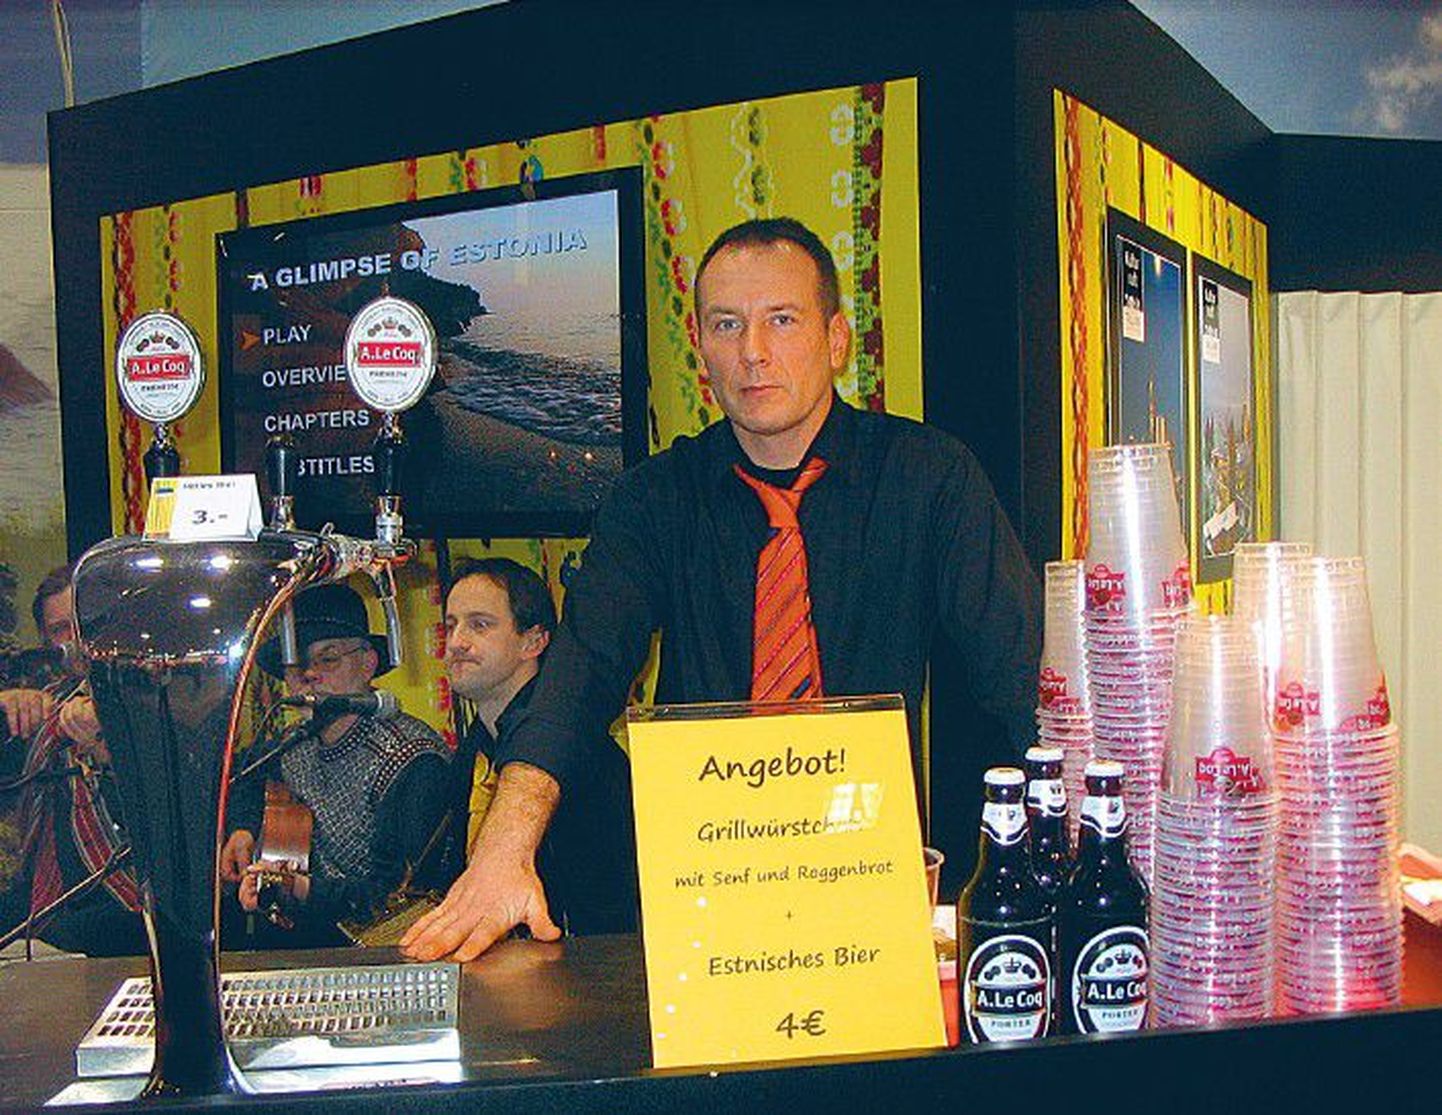 Исполнительный директор транспортной фирмы UPEX LS Урмас Палк продает на выставке пиво уже двенадцатый год. Надпись на табличке: «Предложение! Гриль-колбаски с горчицей и ржаным хлебом. Эстонское пиво. 4 евро».